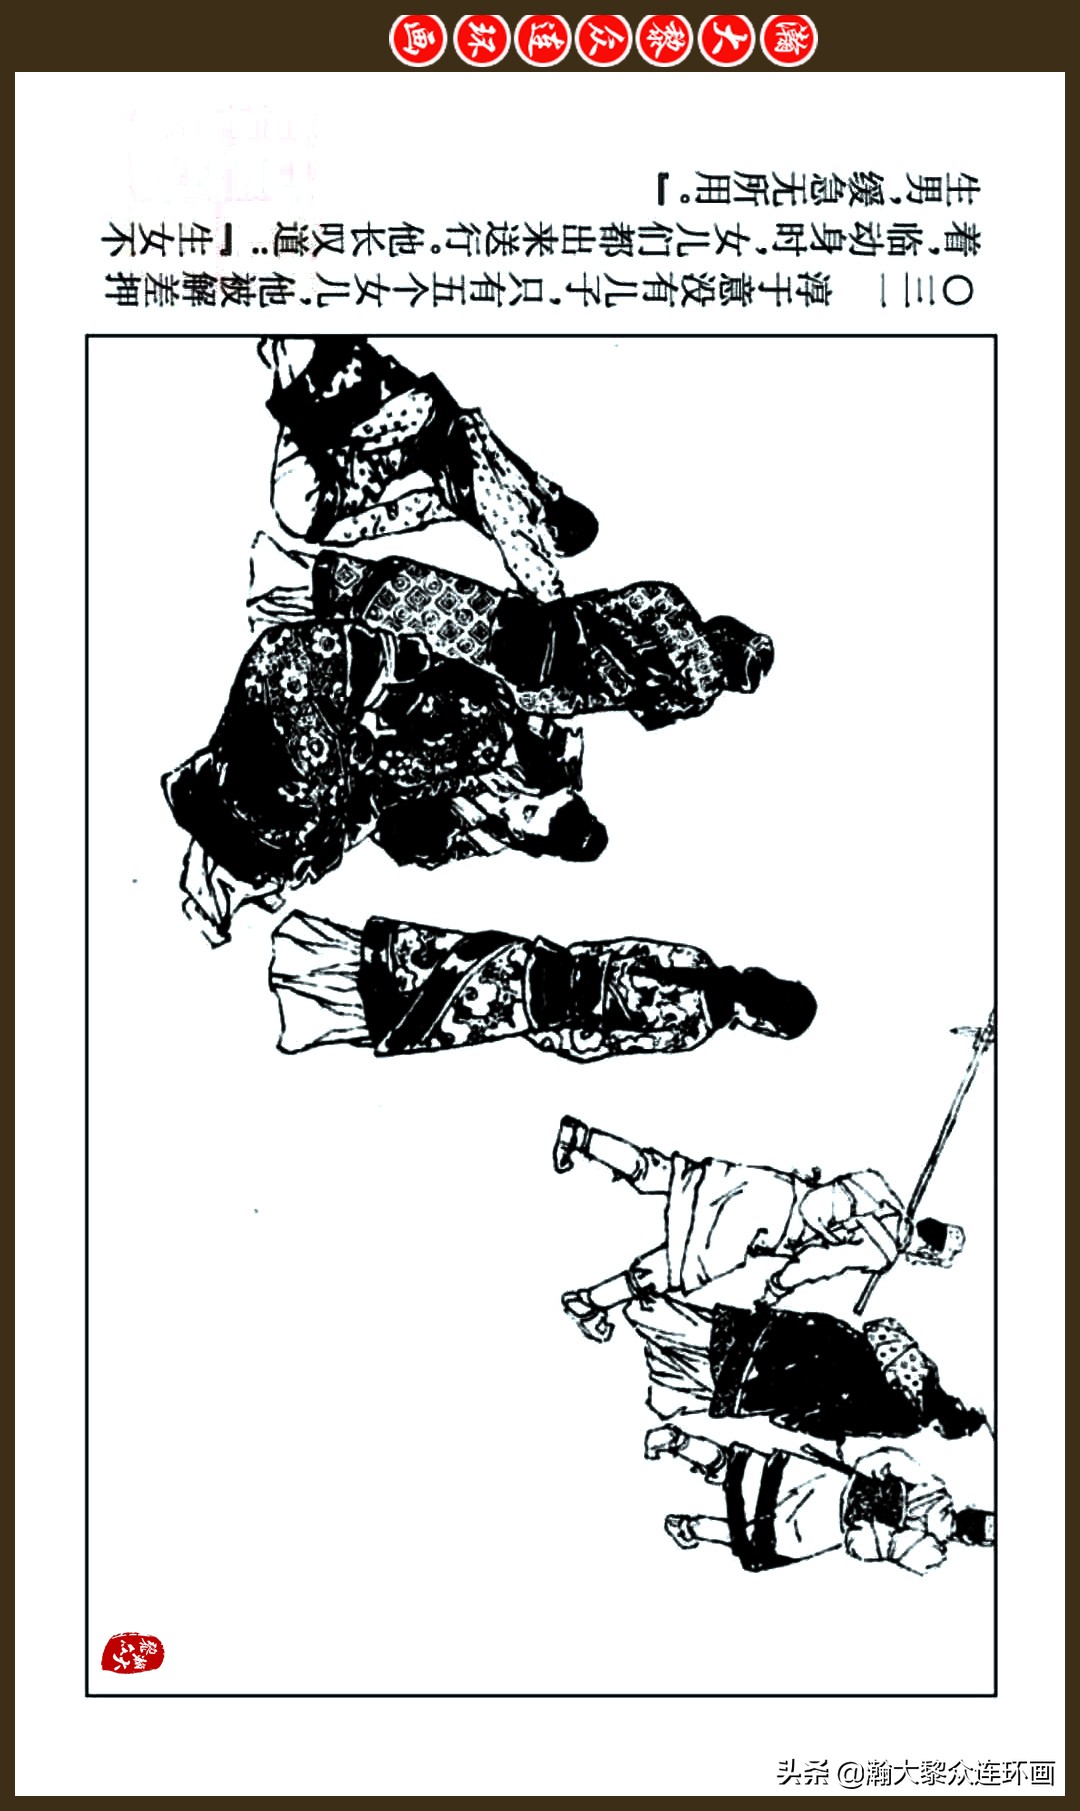 瀚大黎众｜连环画《前汉演义》之十三《励精图治》杨奎根绘画